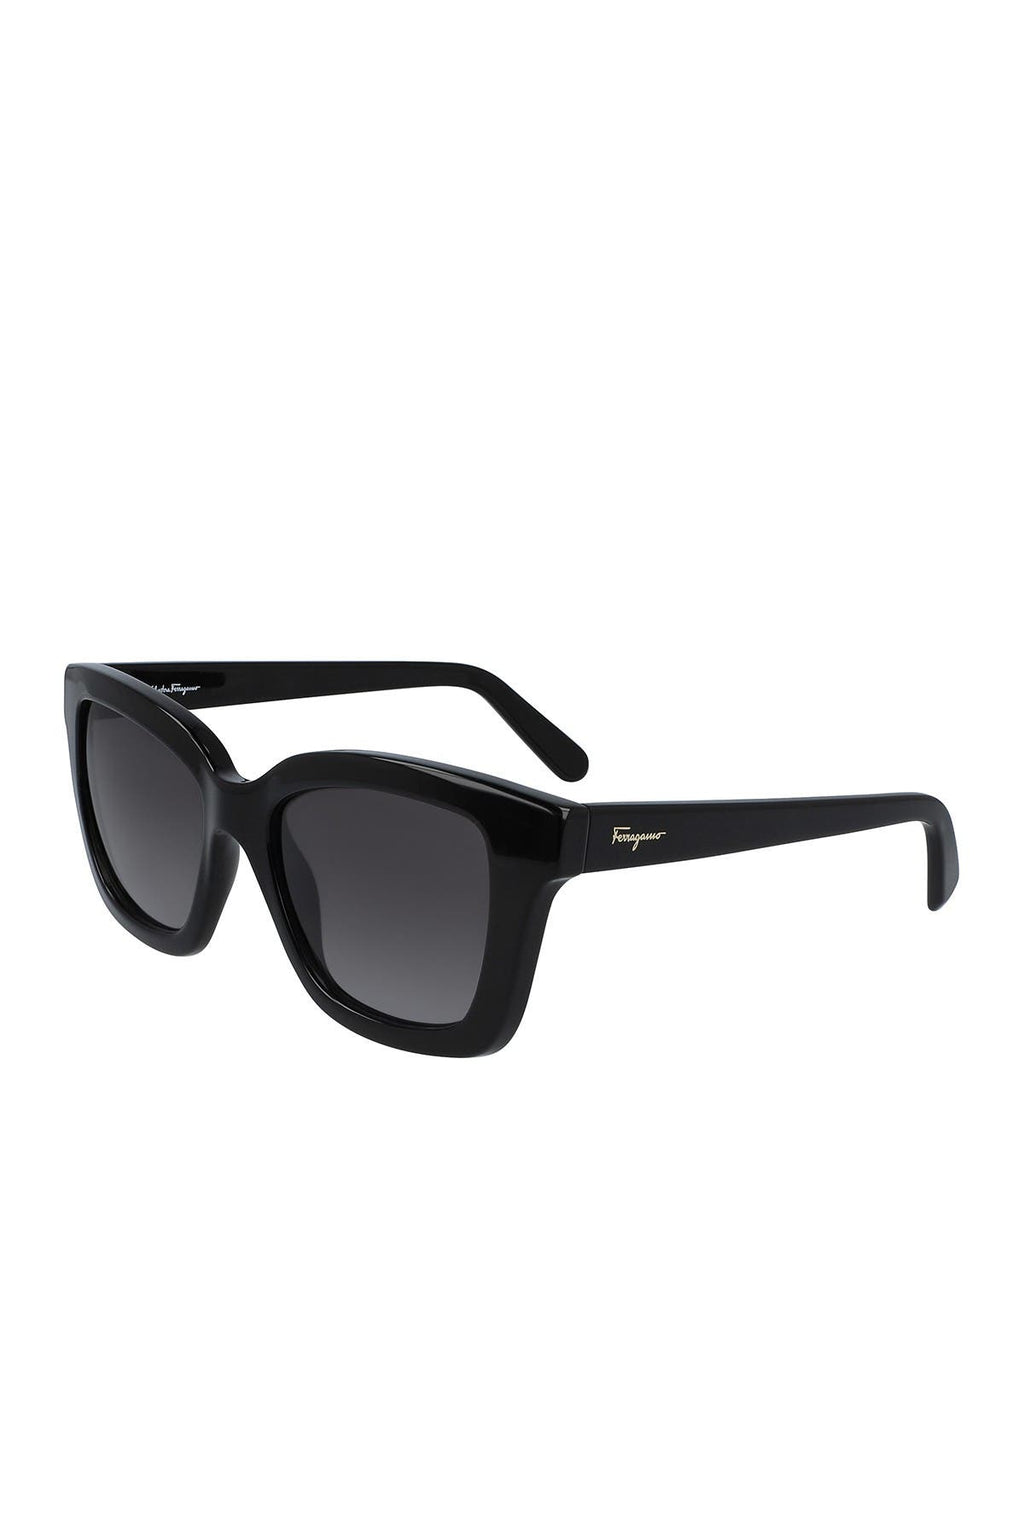 FERRAGAMO 53mm Square Sunglasses, Main, color, BLACK